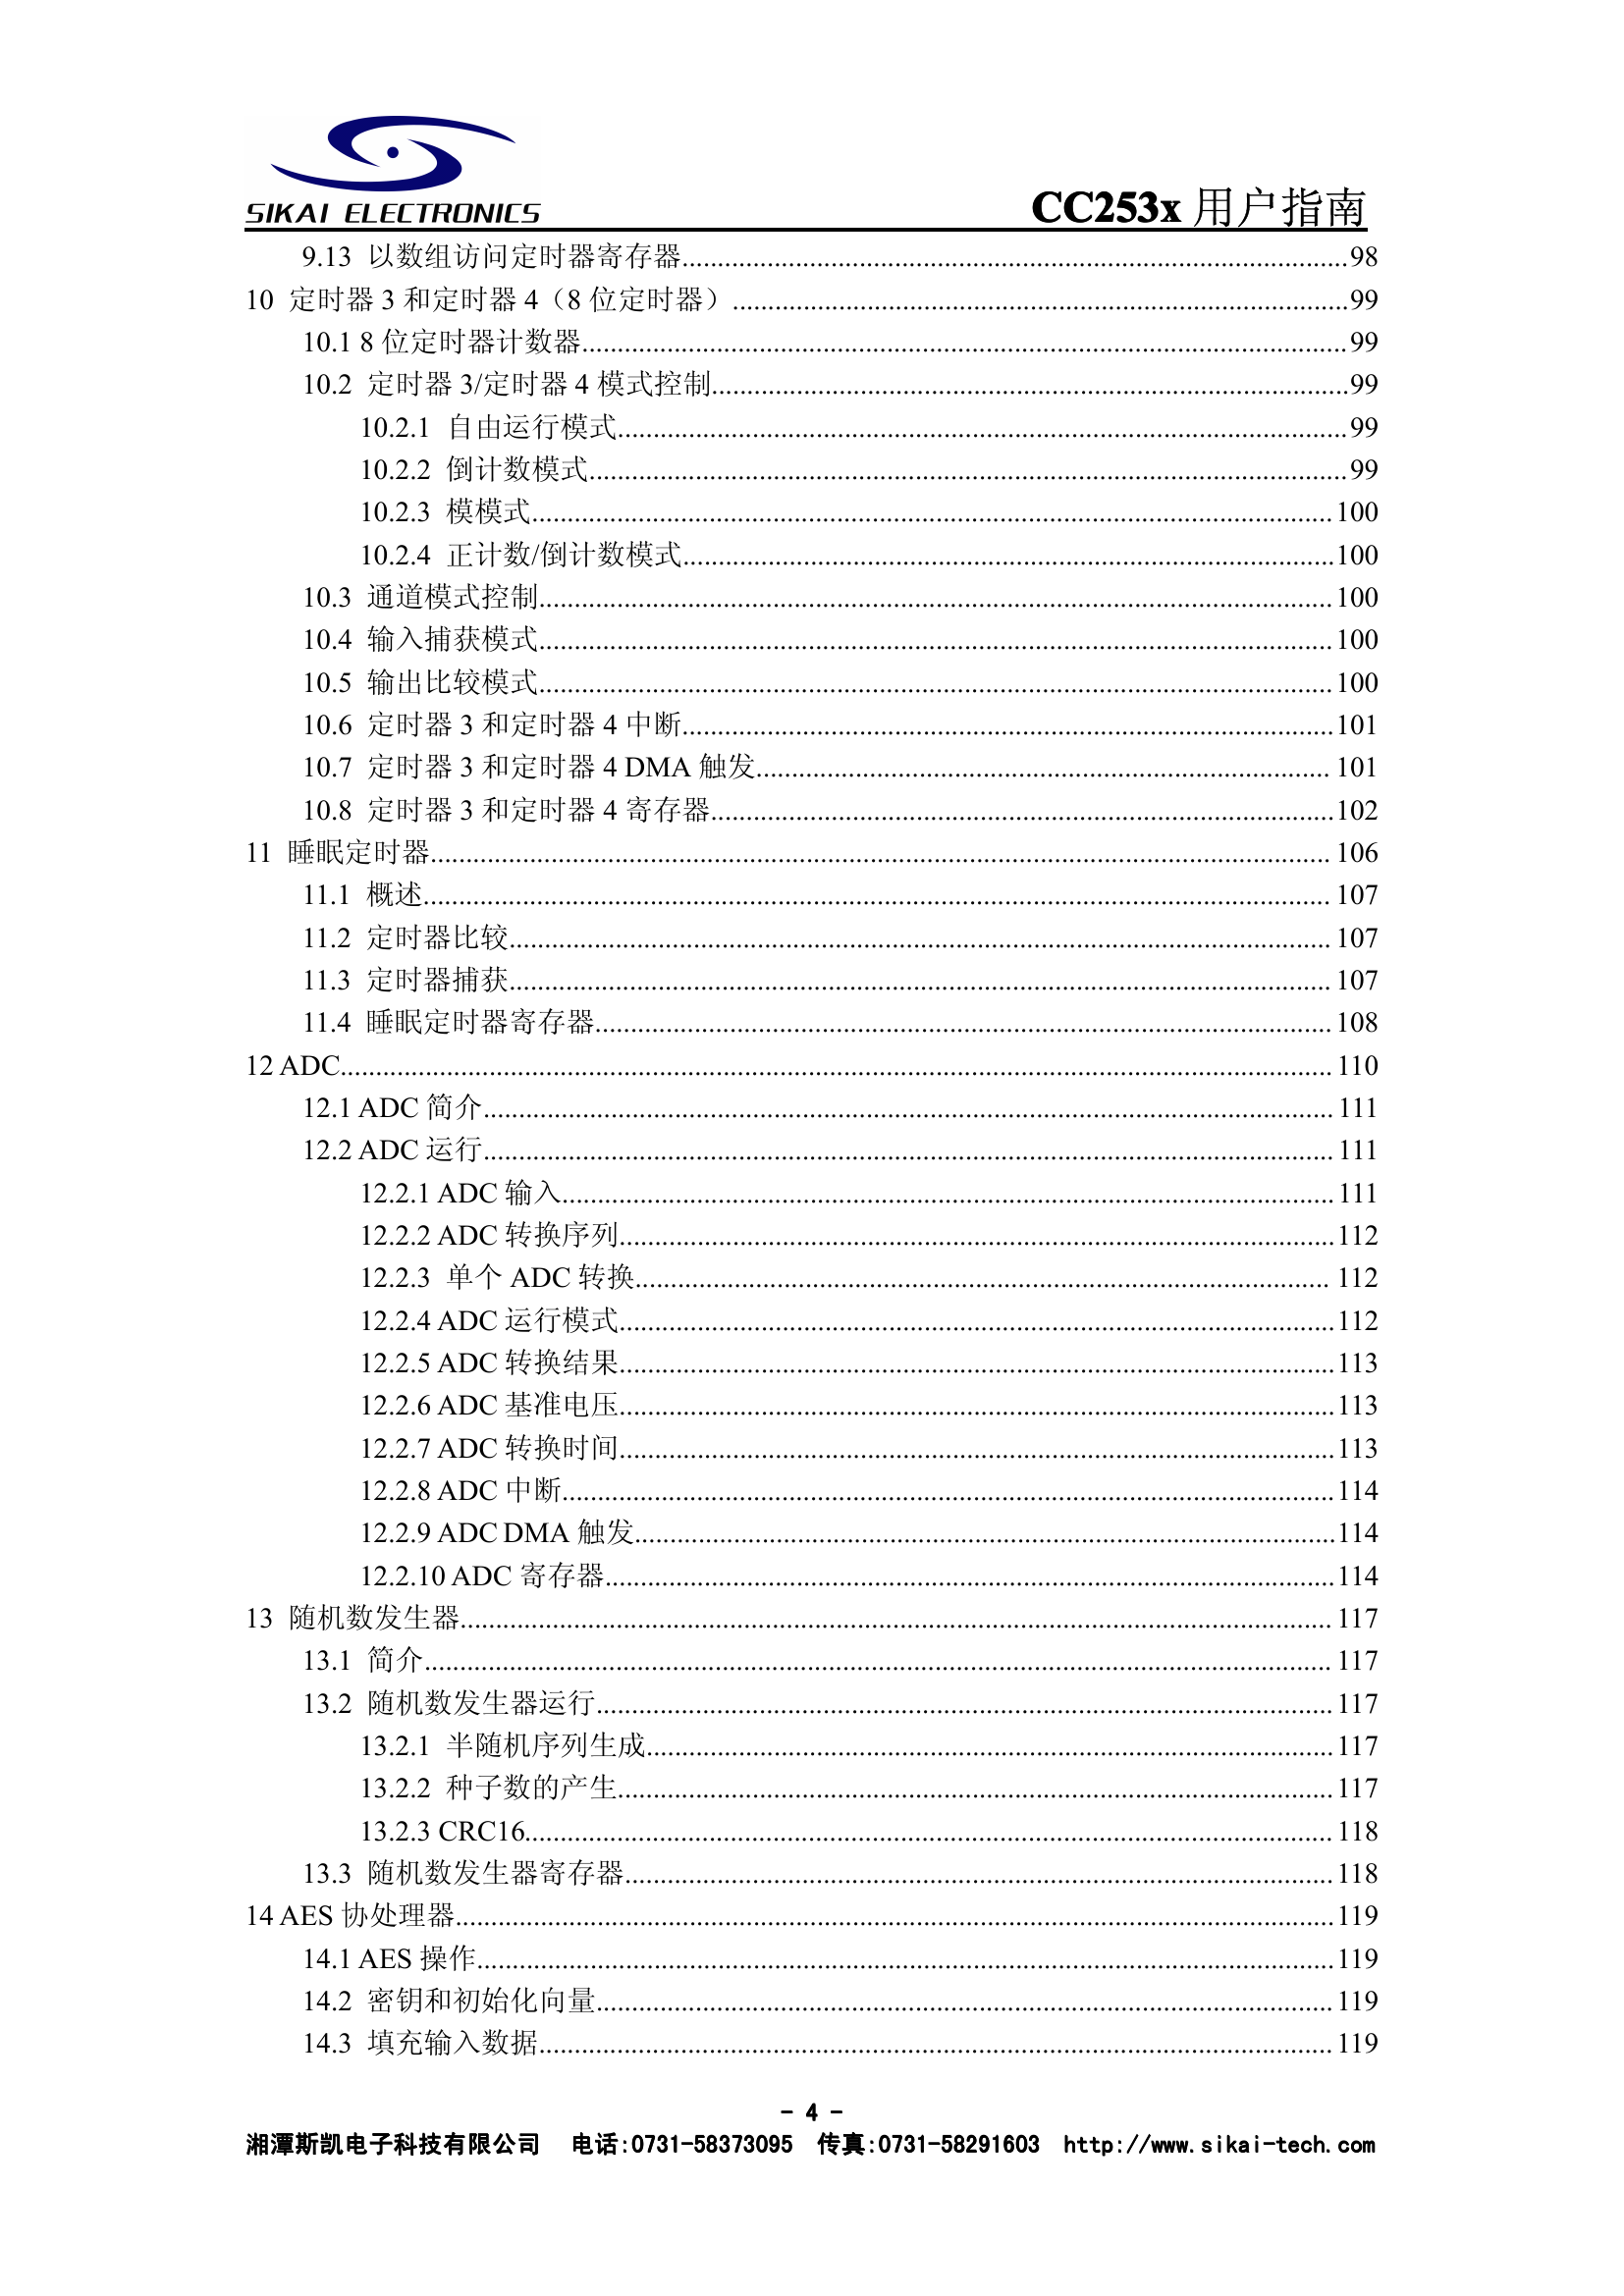 CC253x用户指南(中文).pdf-第5页.png